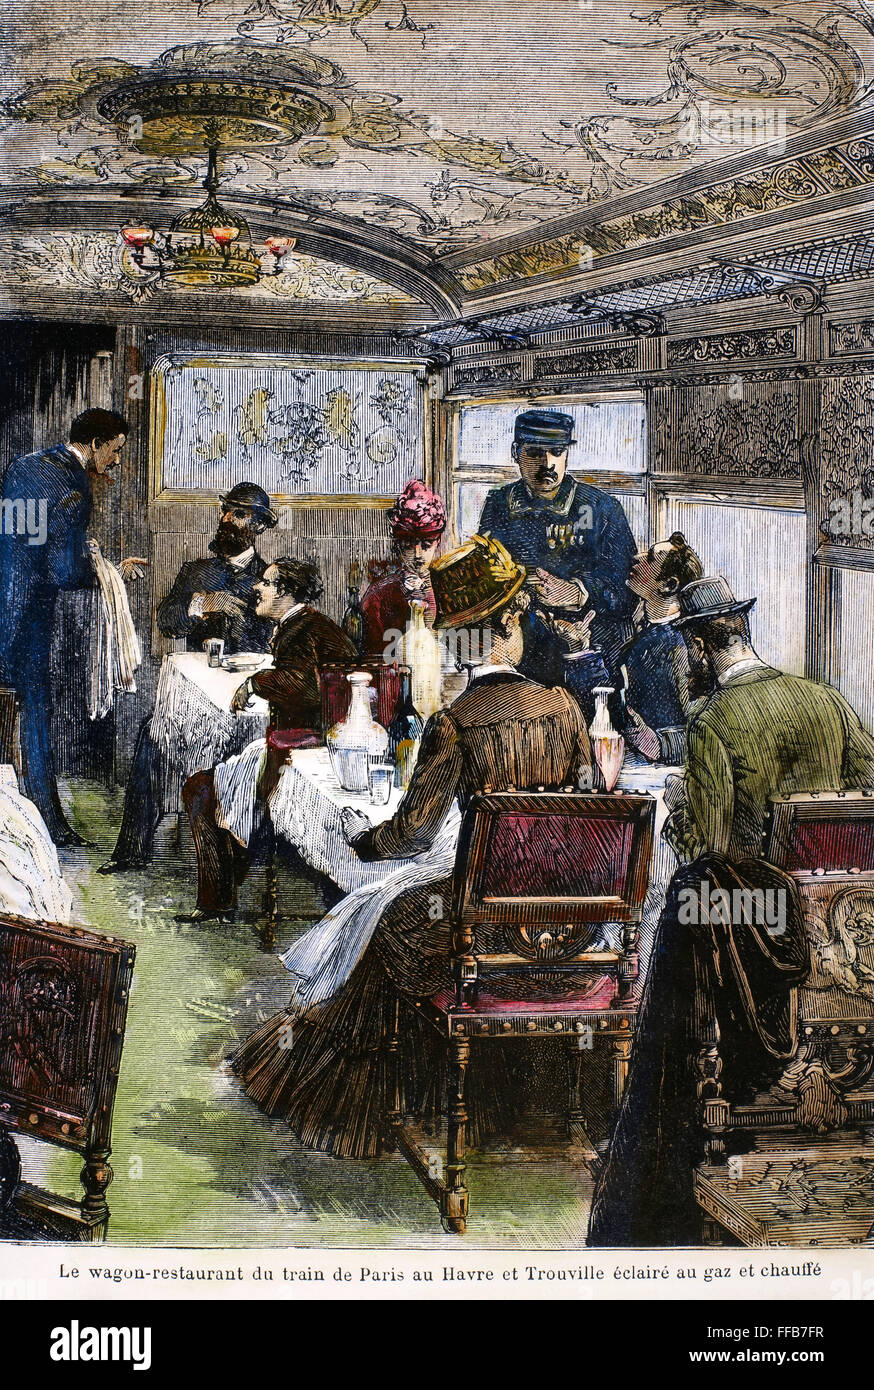 Ferrovia: carrozza ristorante, 1880. /NDining auto sulla linea ferroviaria da Parigi a Le Havre e Trouville in Francia. Incisione su legno, francese, c1880. Foto Stock